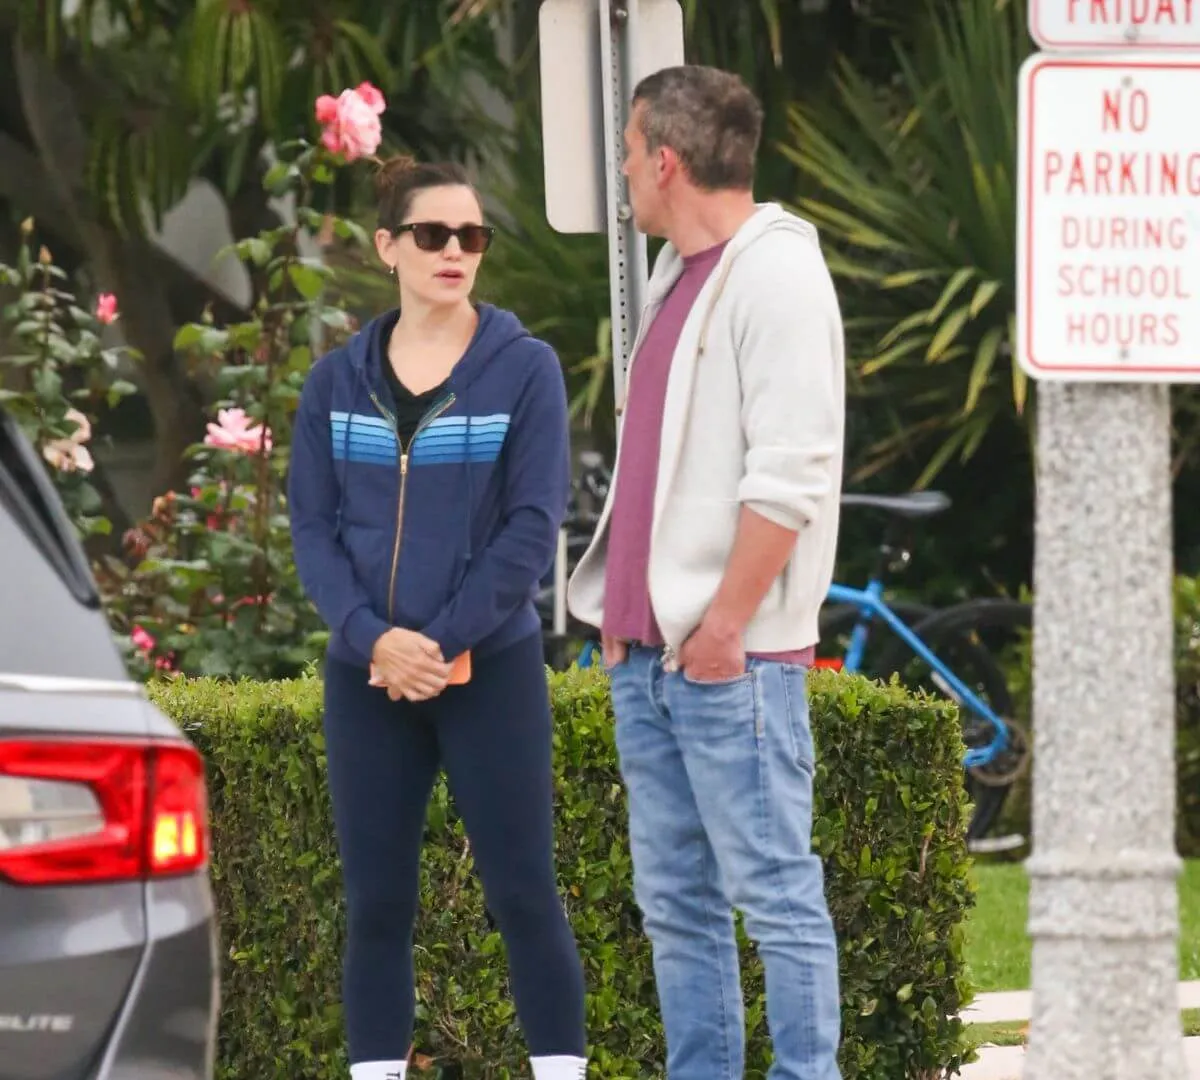 Jennifer Garner and Ben Affleck stand together outside. Jennifer Garner wears a sweatshirt and sunglasses. Ben Affleck wears a sweatshirt and jeans.